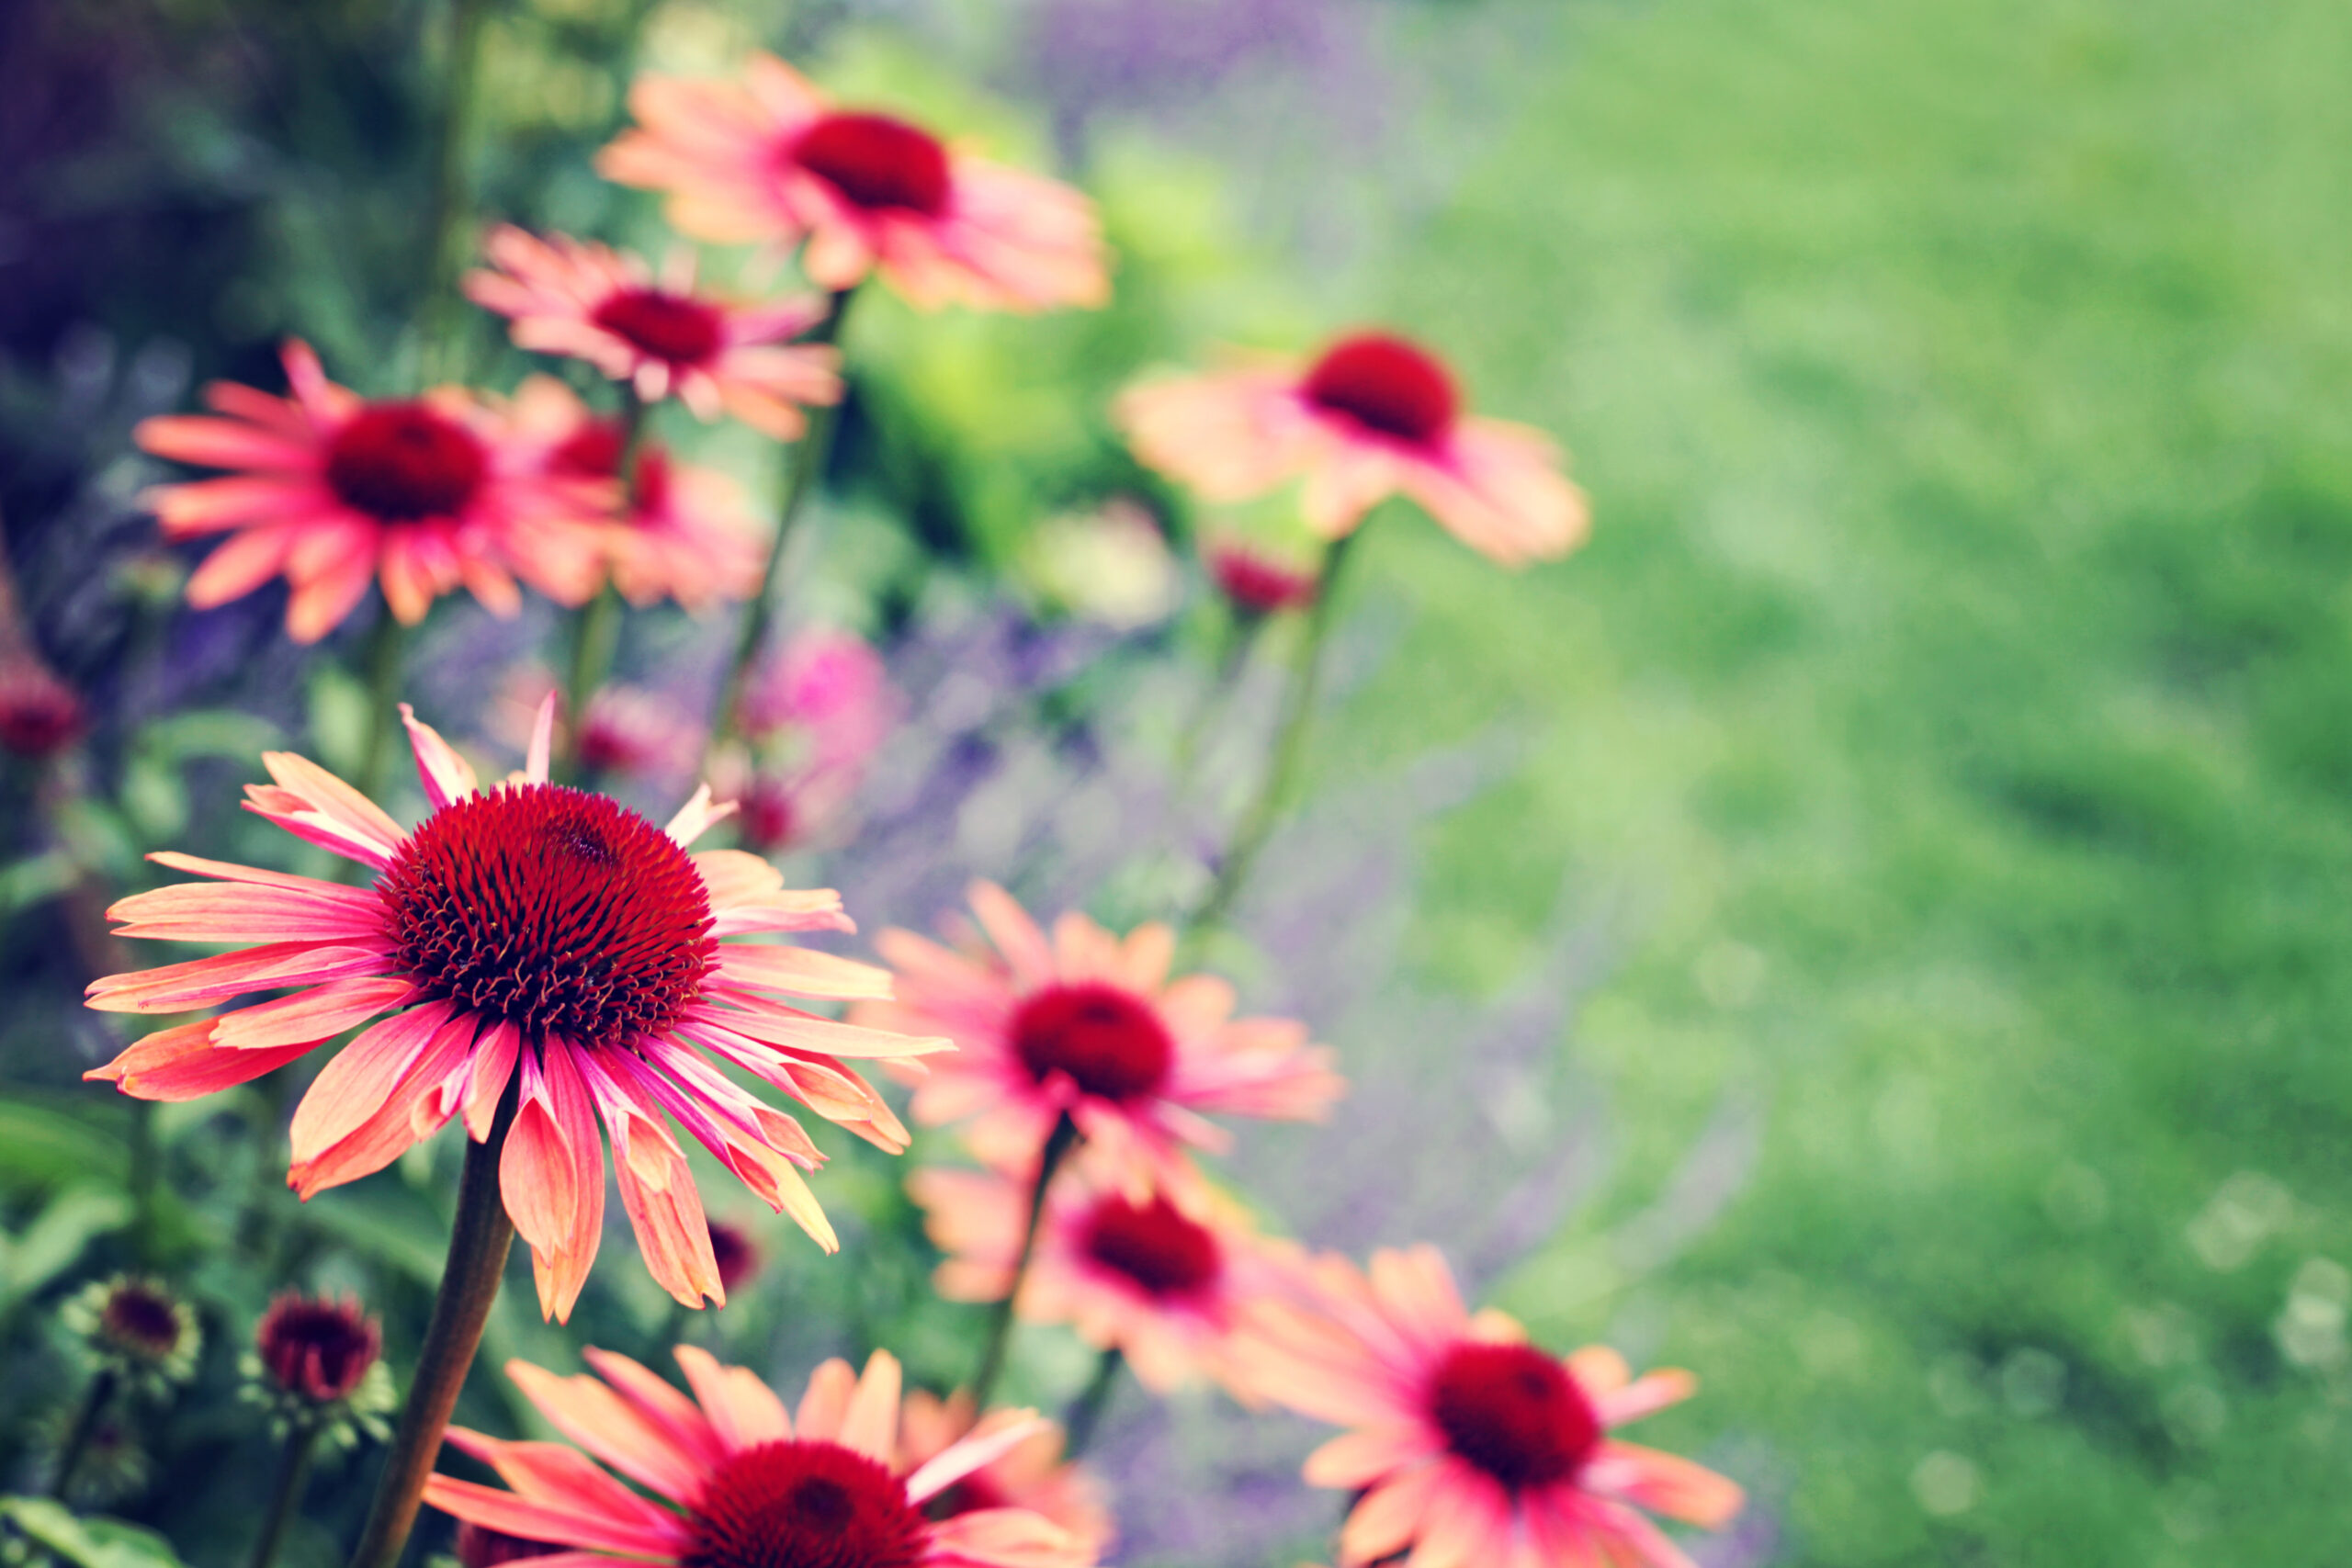 Echinacea flowers in garden